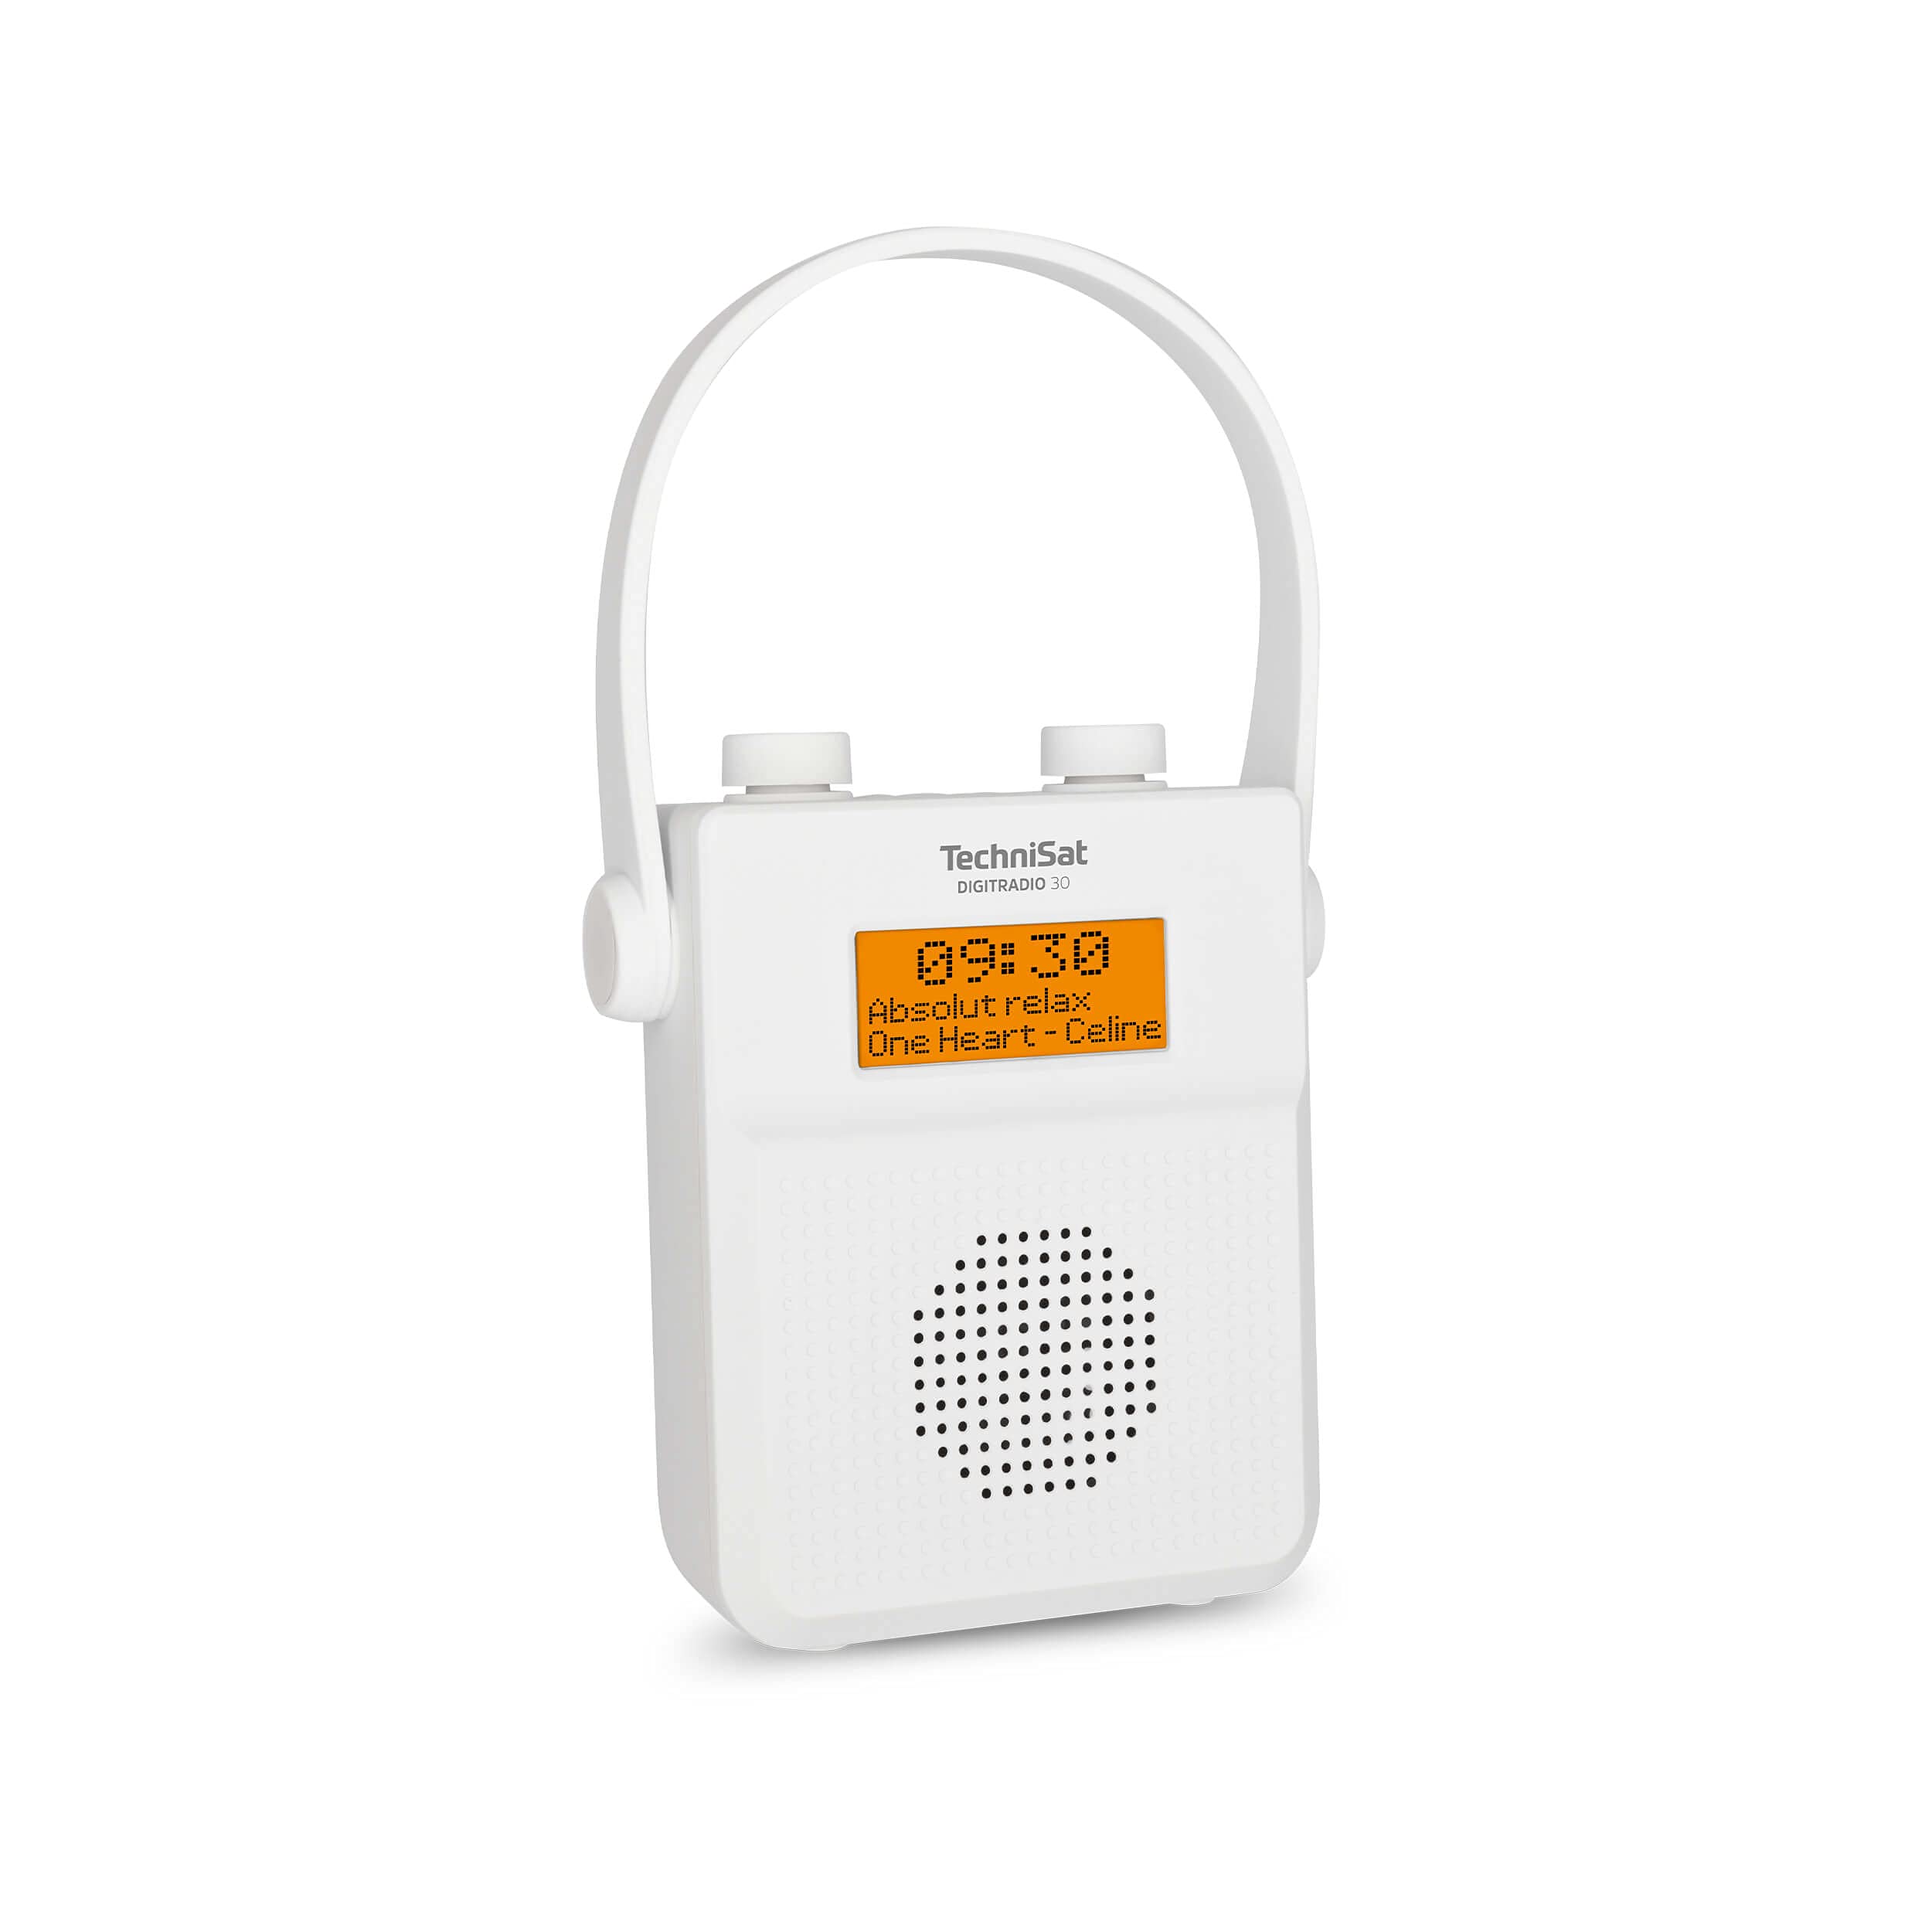 TechniSat DIGITRADIO 30 - wasserdichtes DAB+ Duschradio (UKW, DAB Digitalradio, integrierter Akku, Bluetooth, wasserdicht nach IPX5, Wecker, Favoritenspeicher, Kopfhörer-Anschluss) weiß